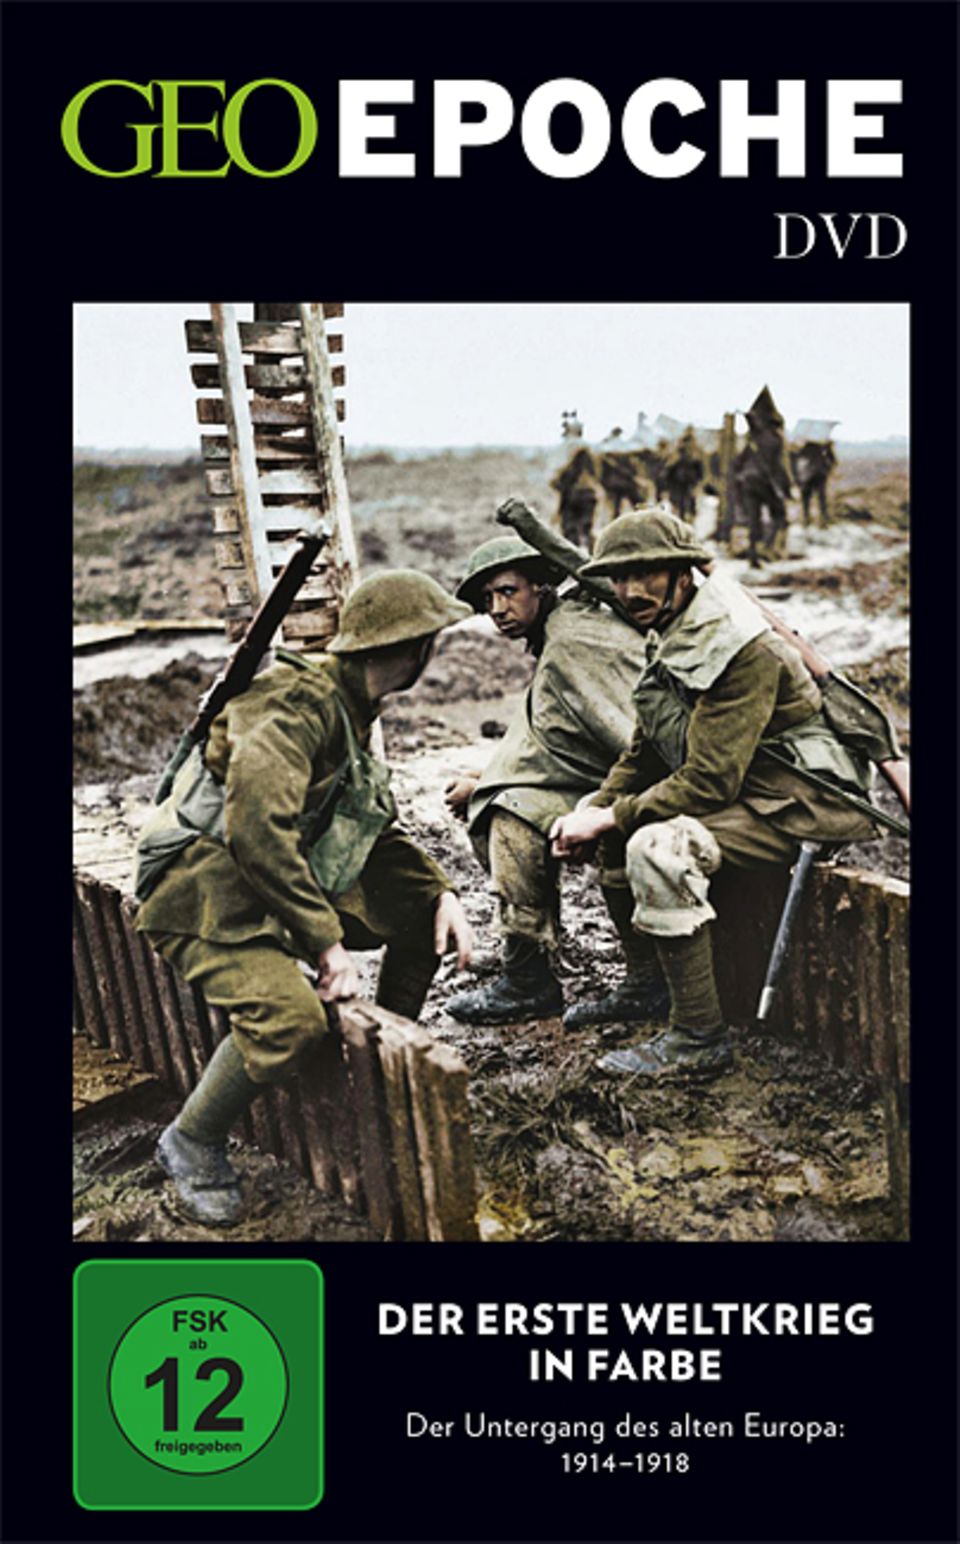 GEOEPOCHE-DVD "Der Erste Weltkrieg in Farbe"